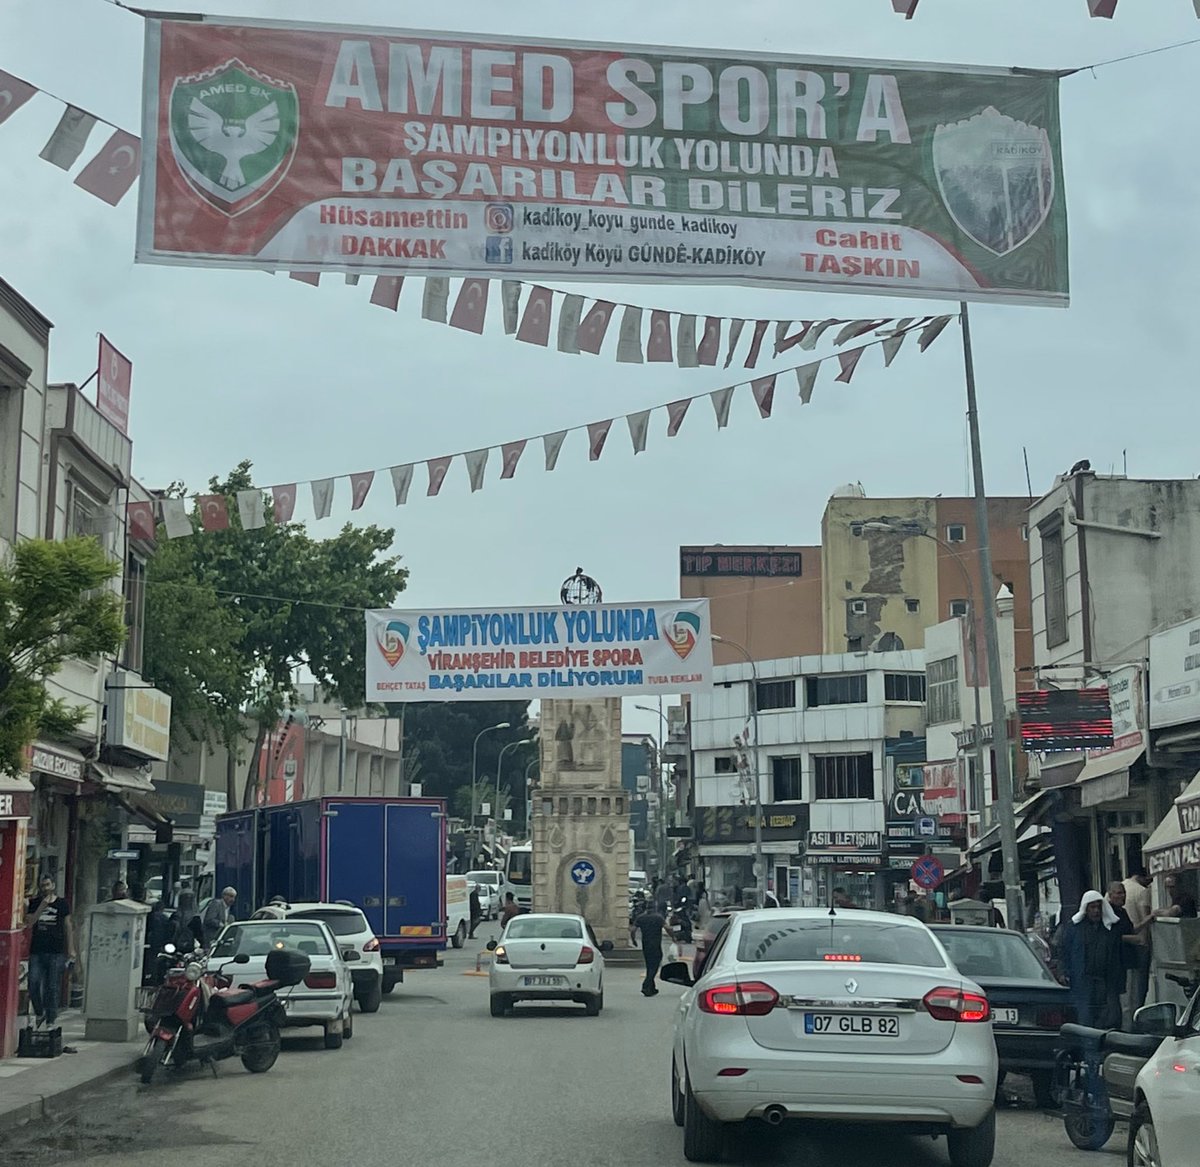 Viranşehir meydanında 2 adet güzel pankart 😊